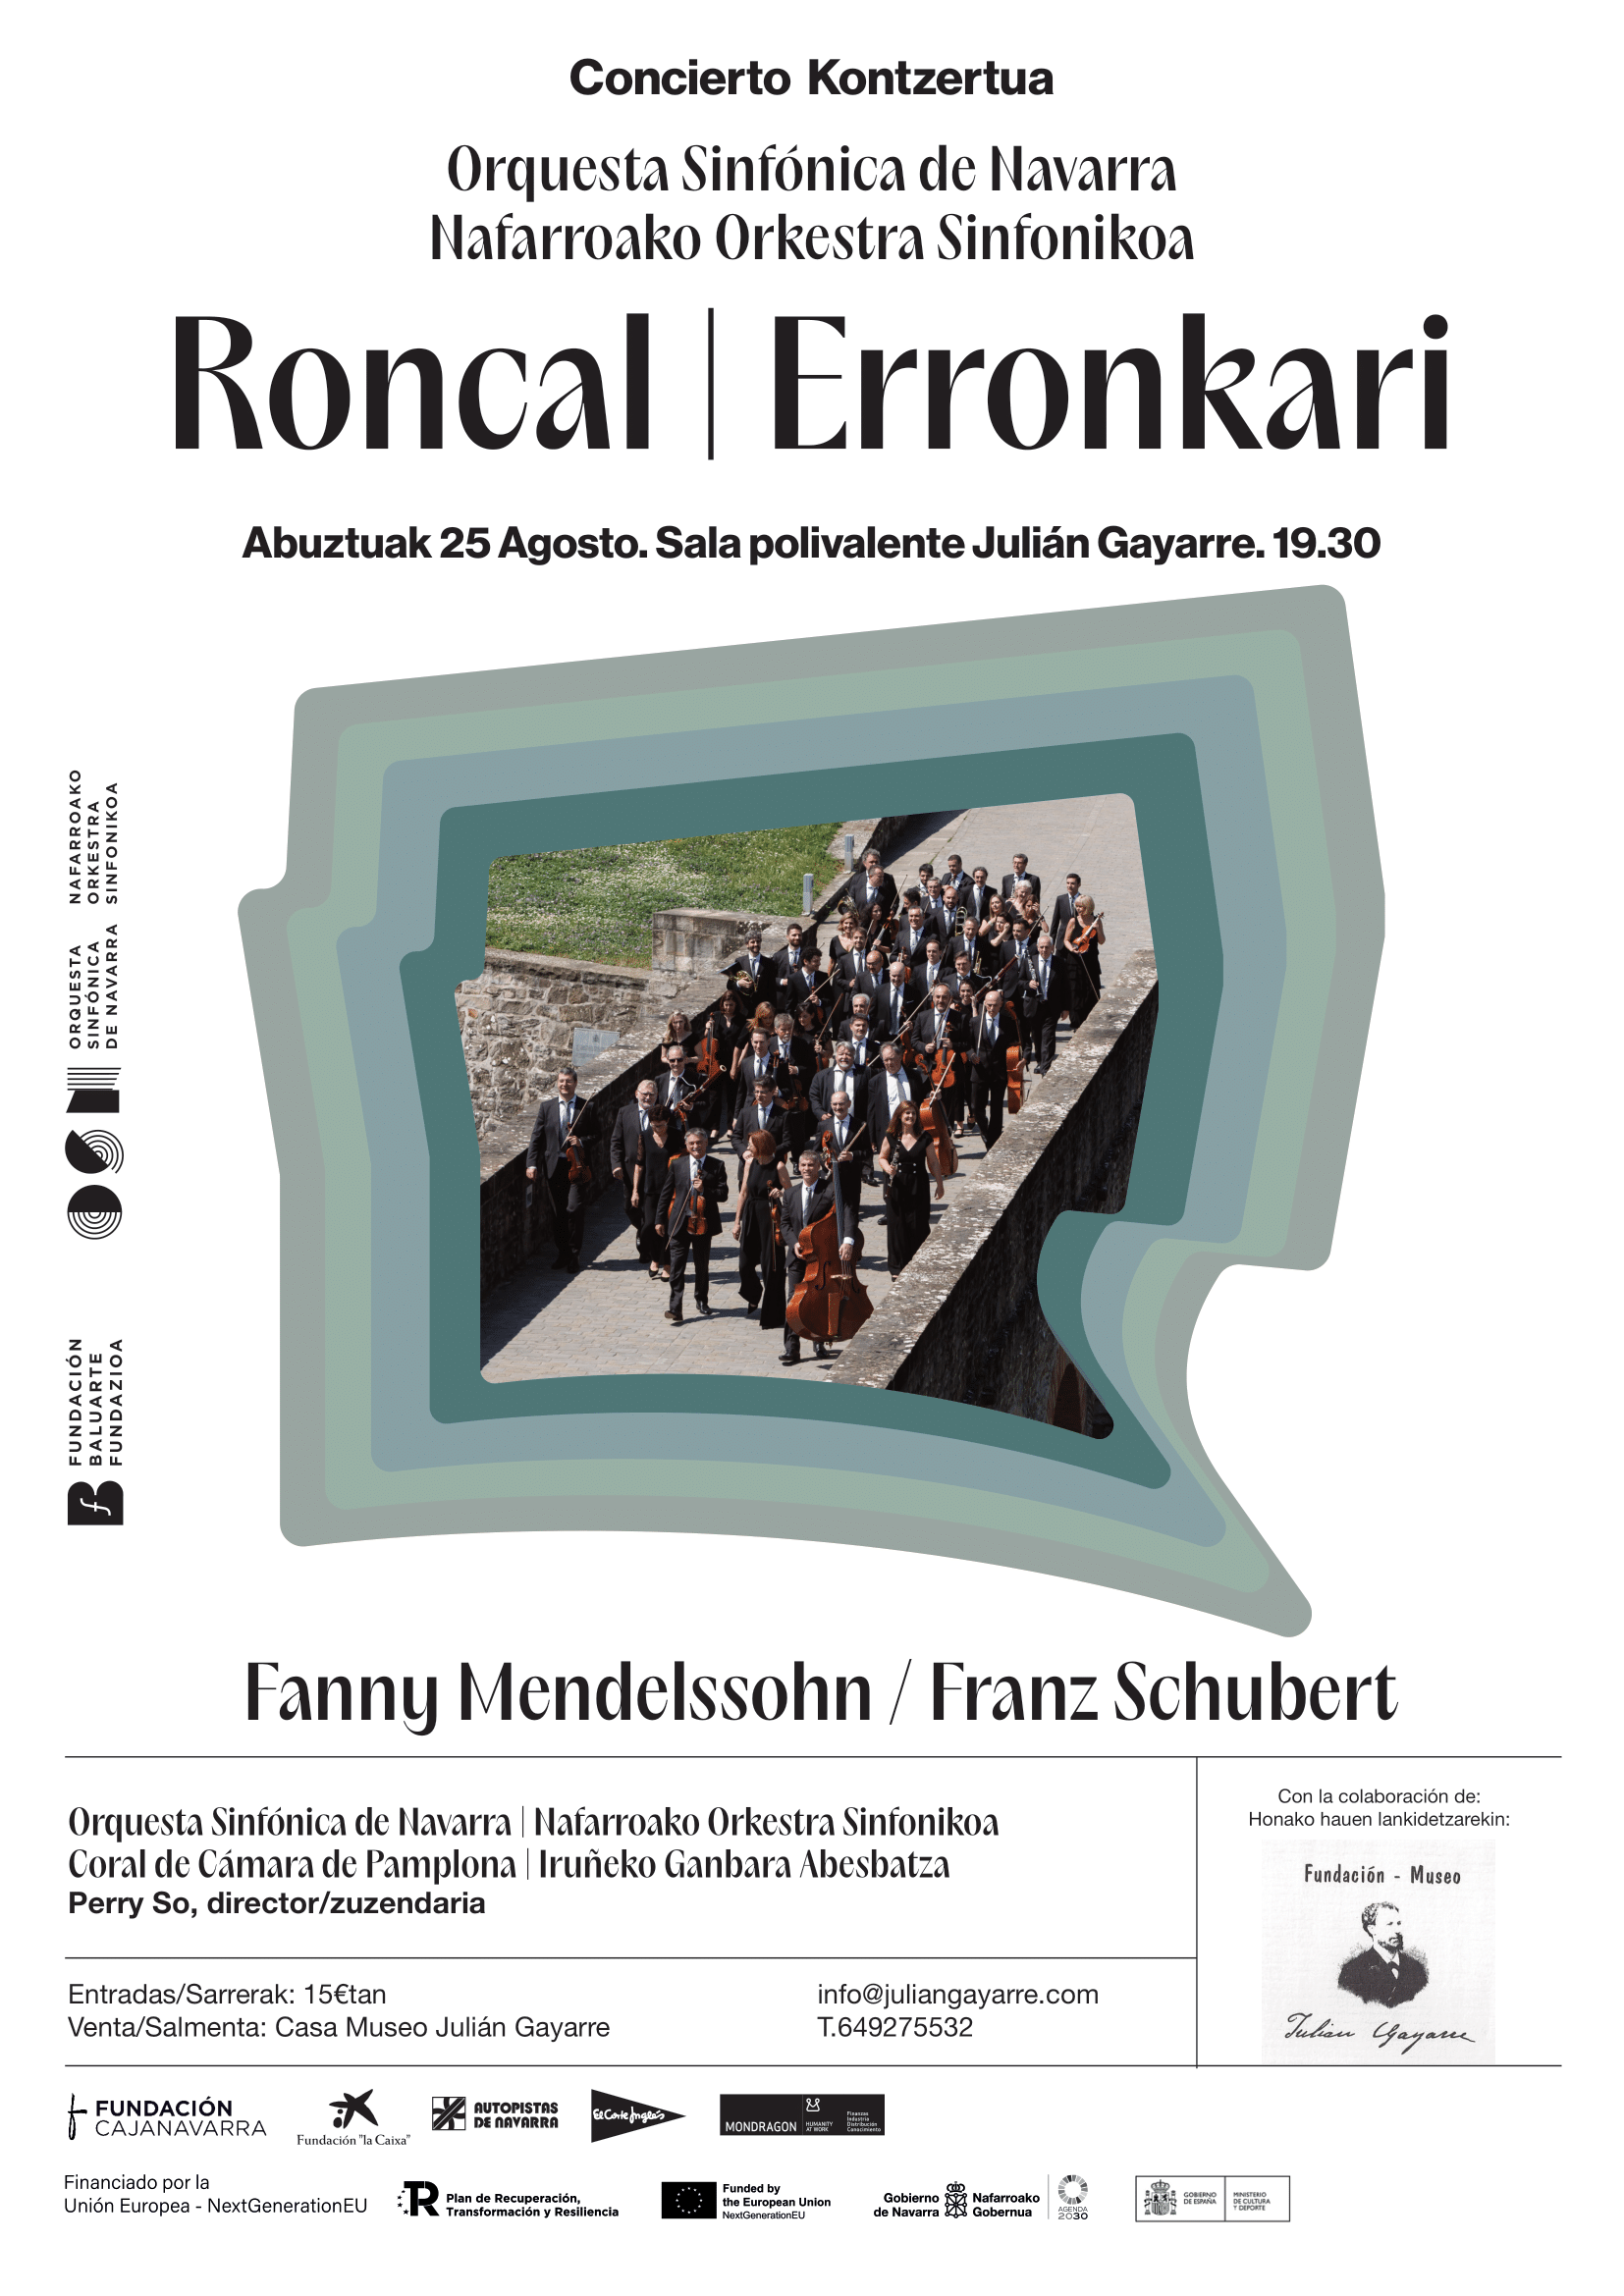 Arranca en Roncal/Erronkari la temporada de Sinfónica en Navarra 